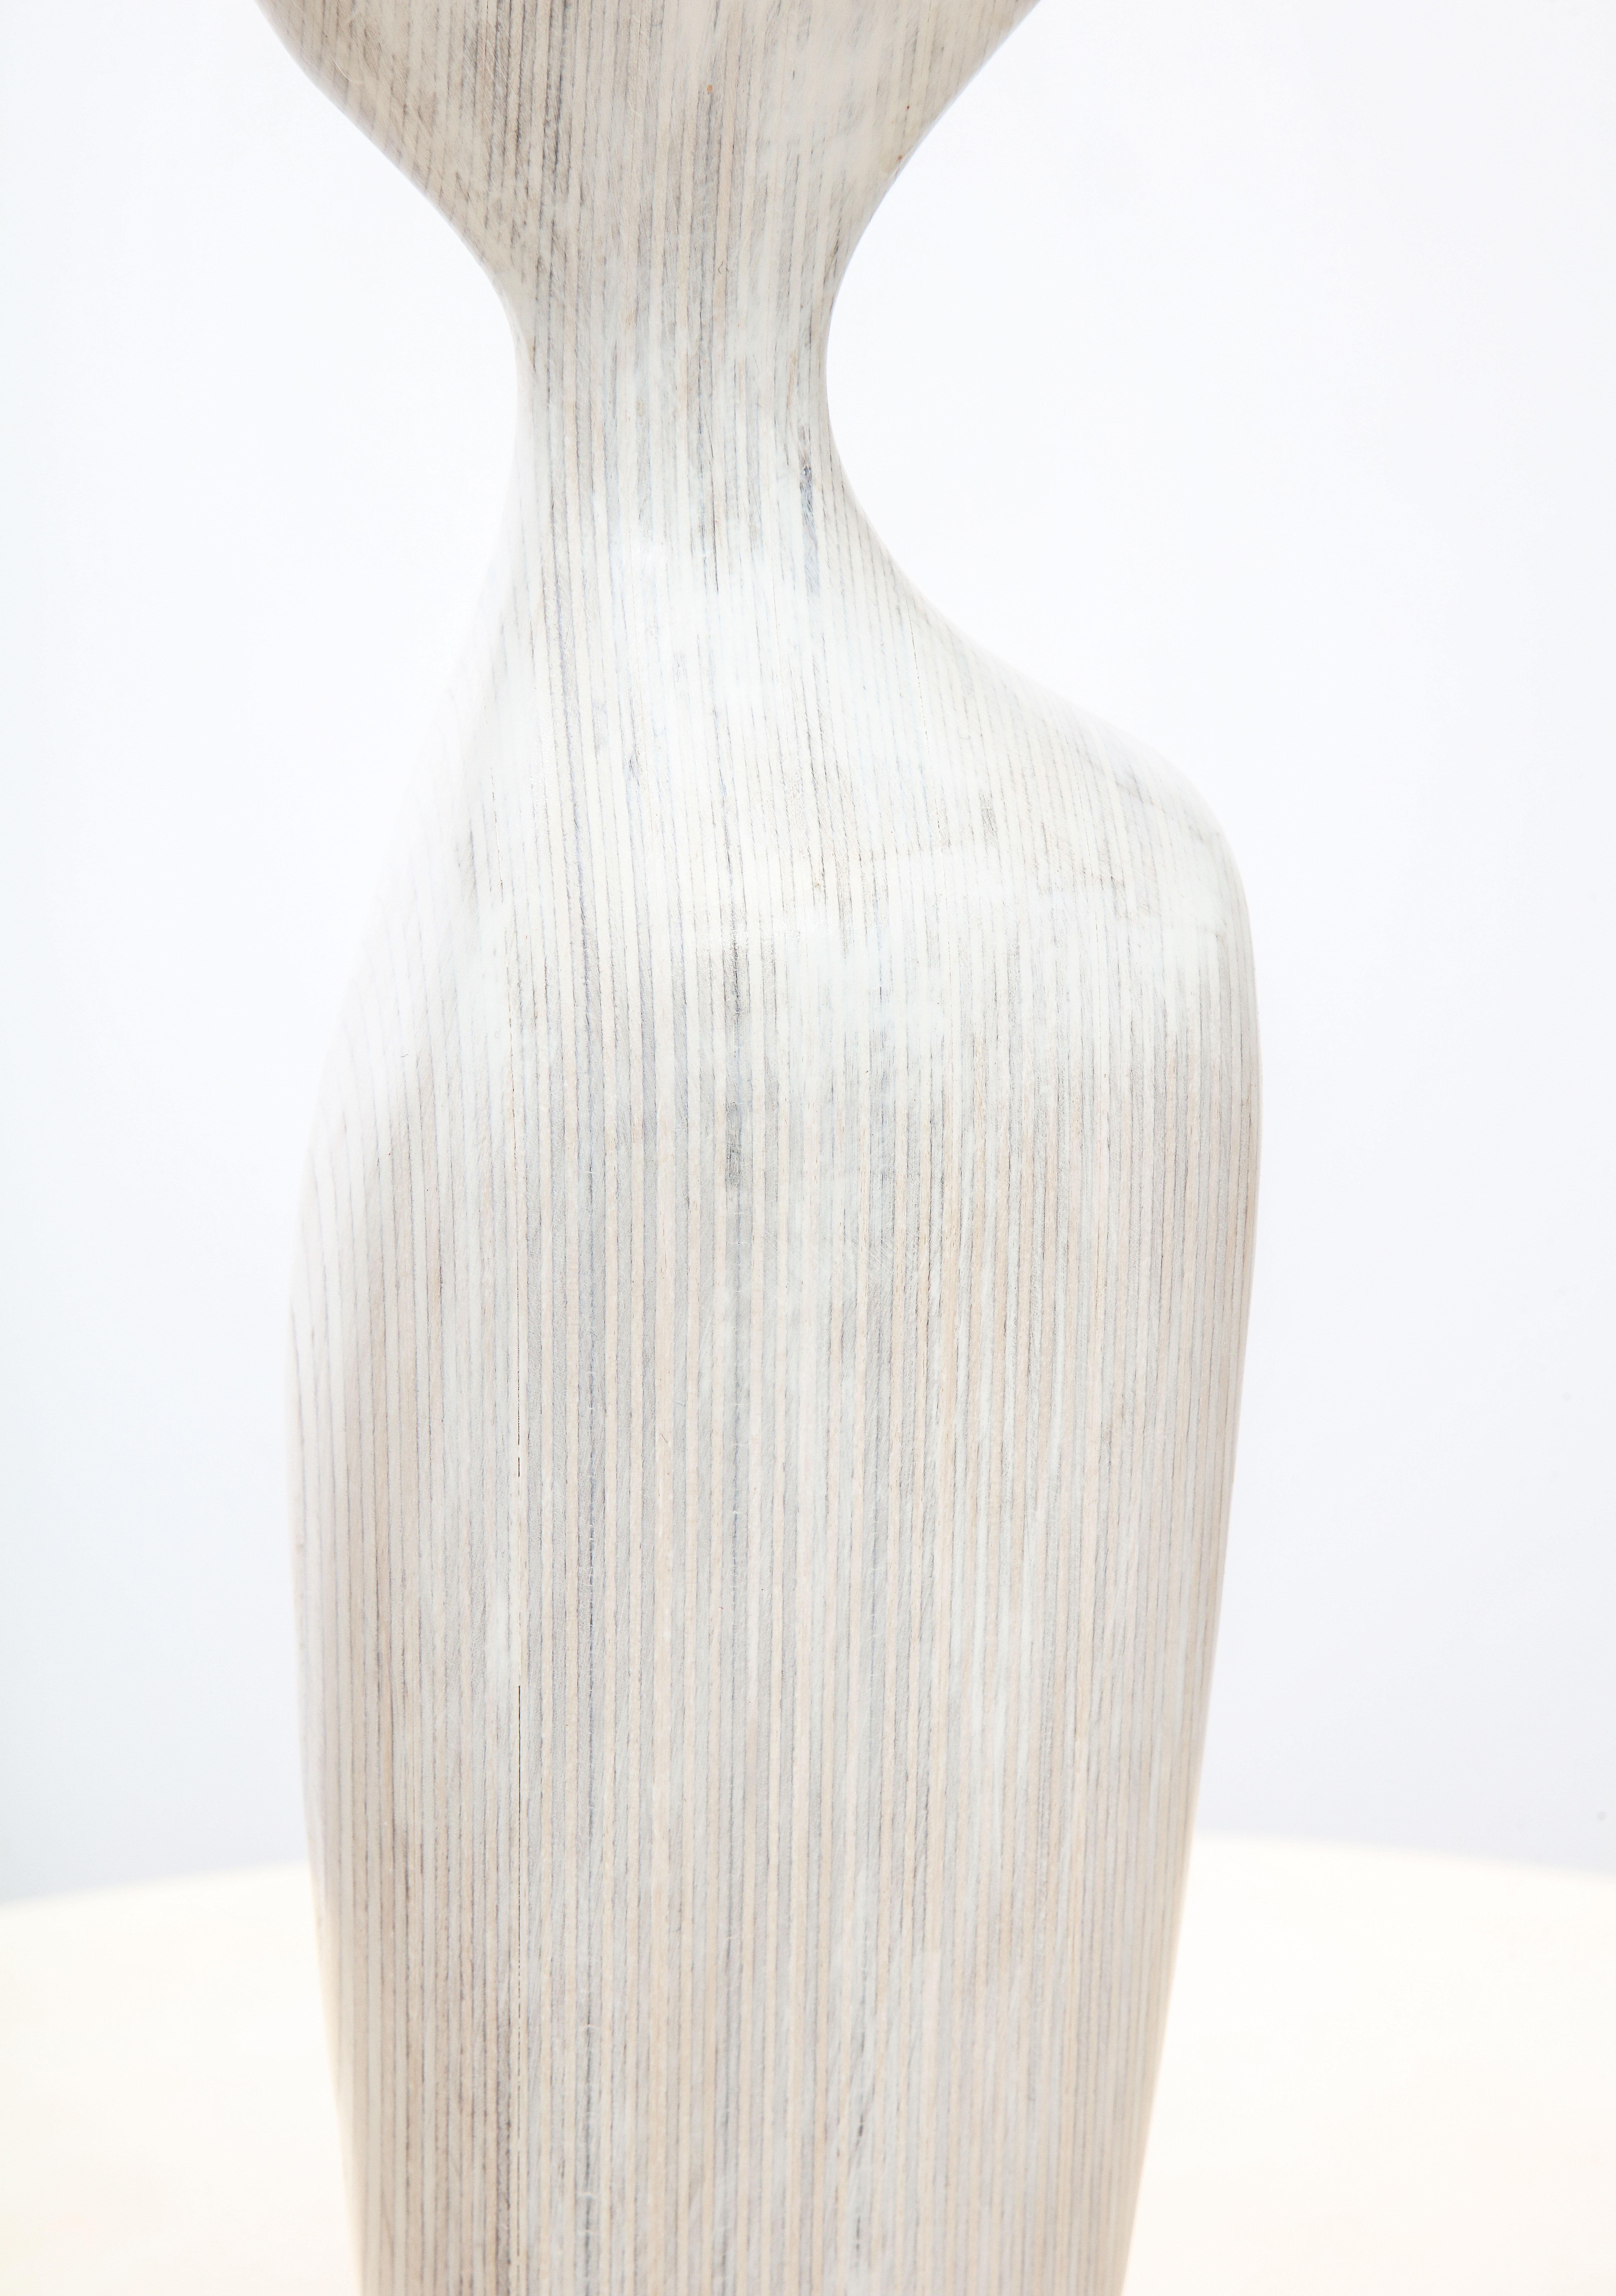 'Figure Study III' Contemporary Wood Figurative Sculpture 5